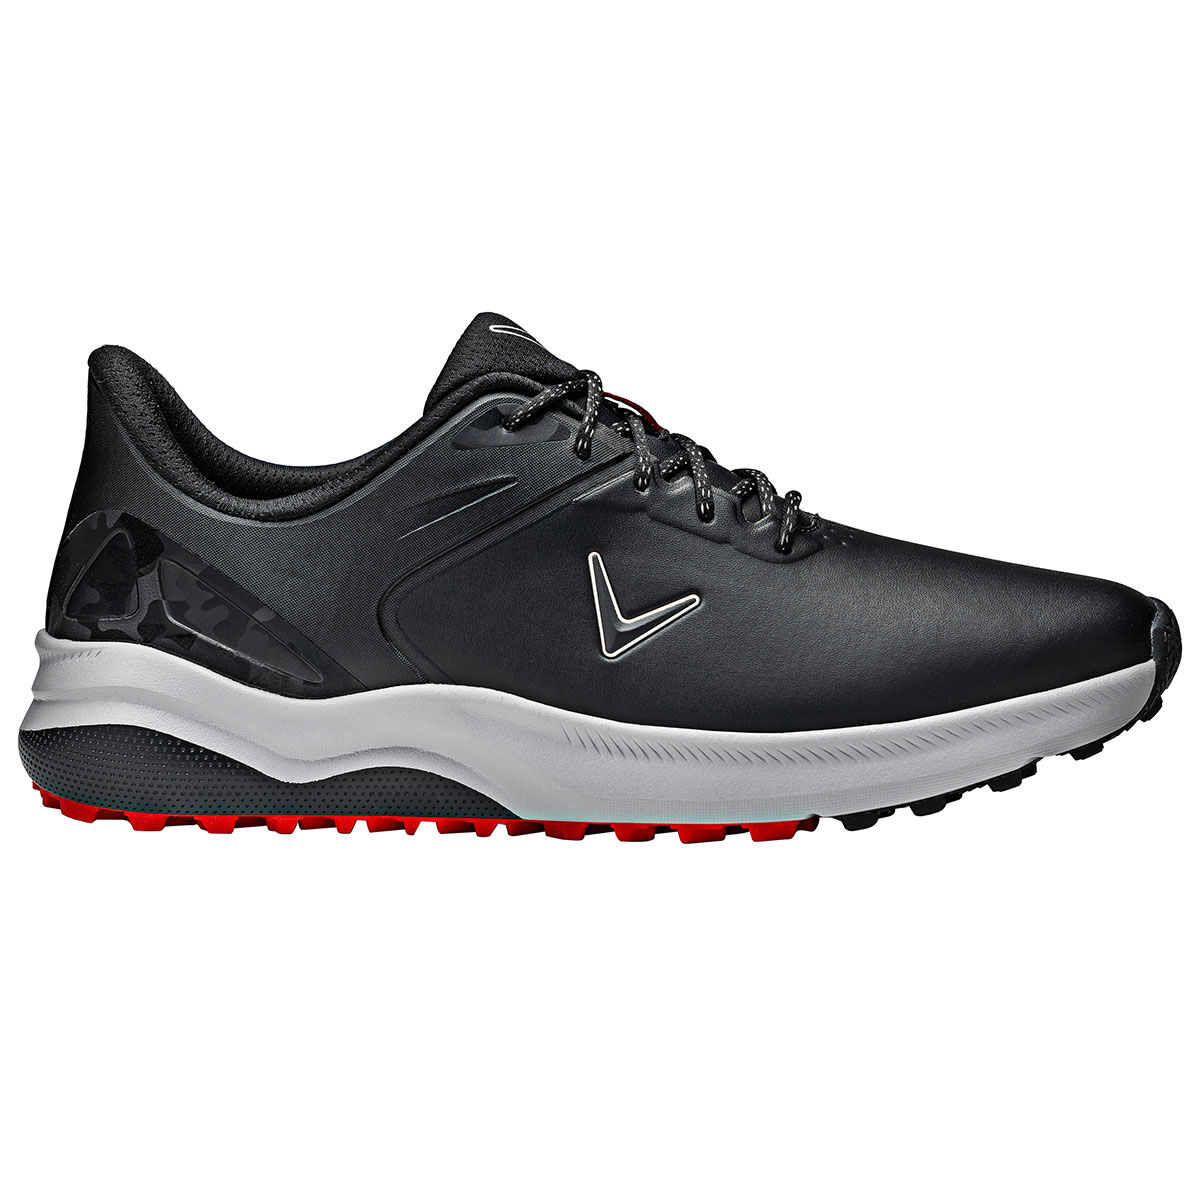 Callaway Golf Mens Black Waterproof Lazer Spikeless Golf Shoes, Size: 11 | American Golf von Callaway Golf